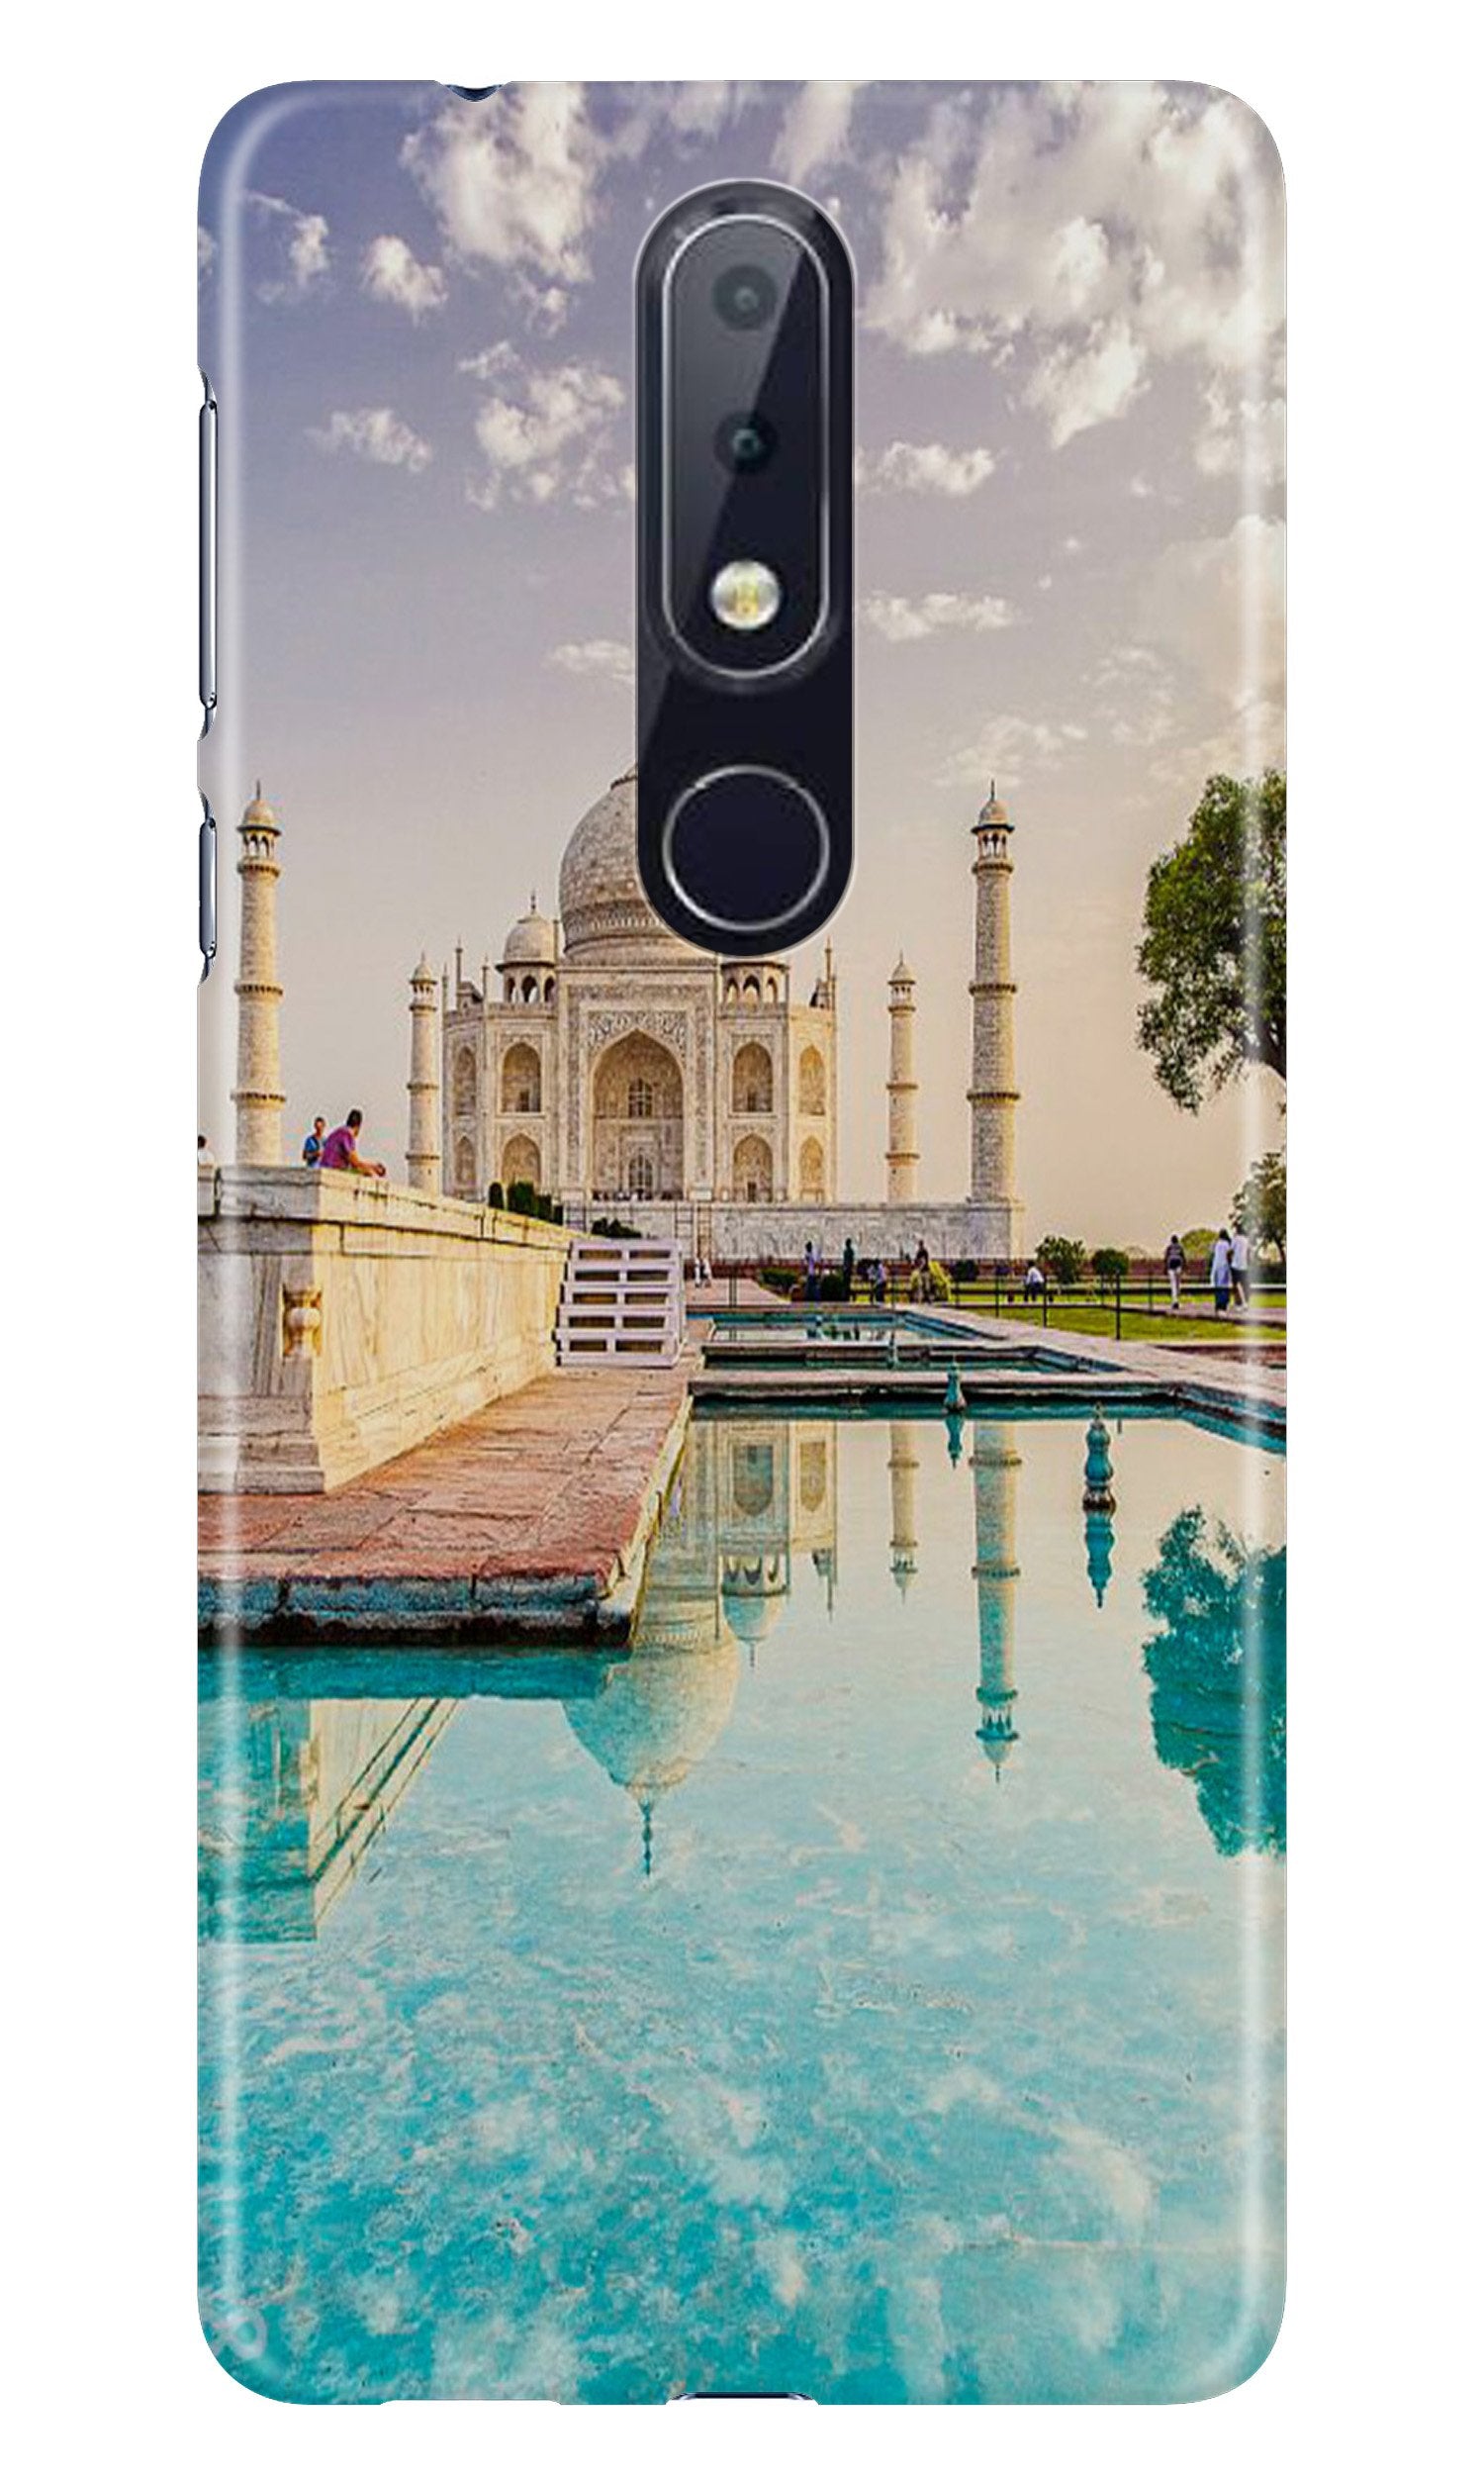 Taj Mahal Case for Nokia 4.2 (Design No. 297)